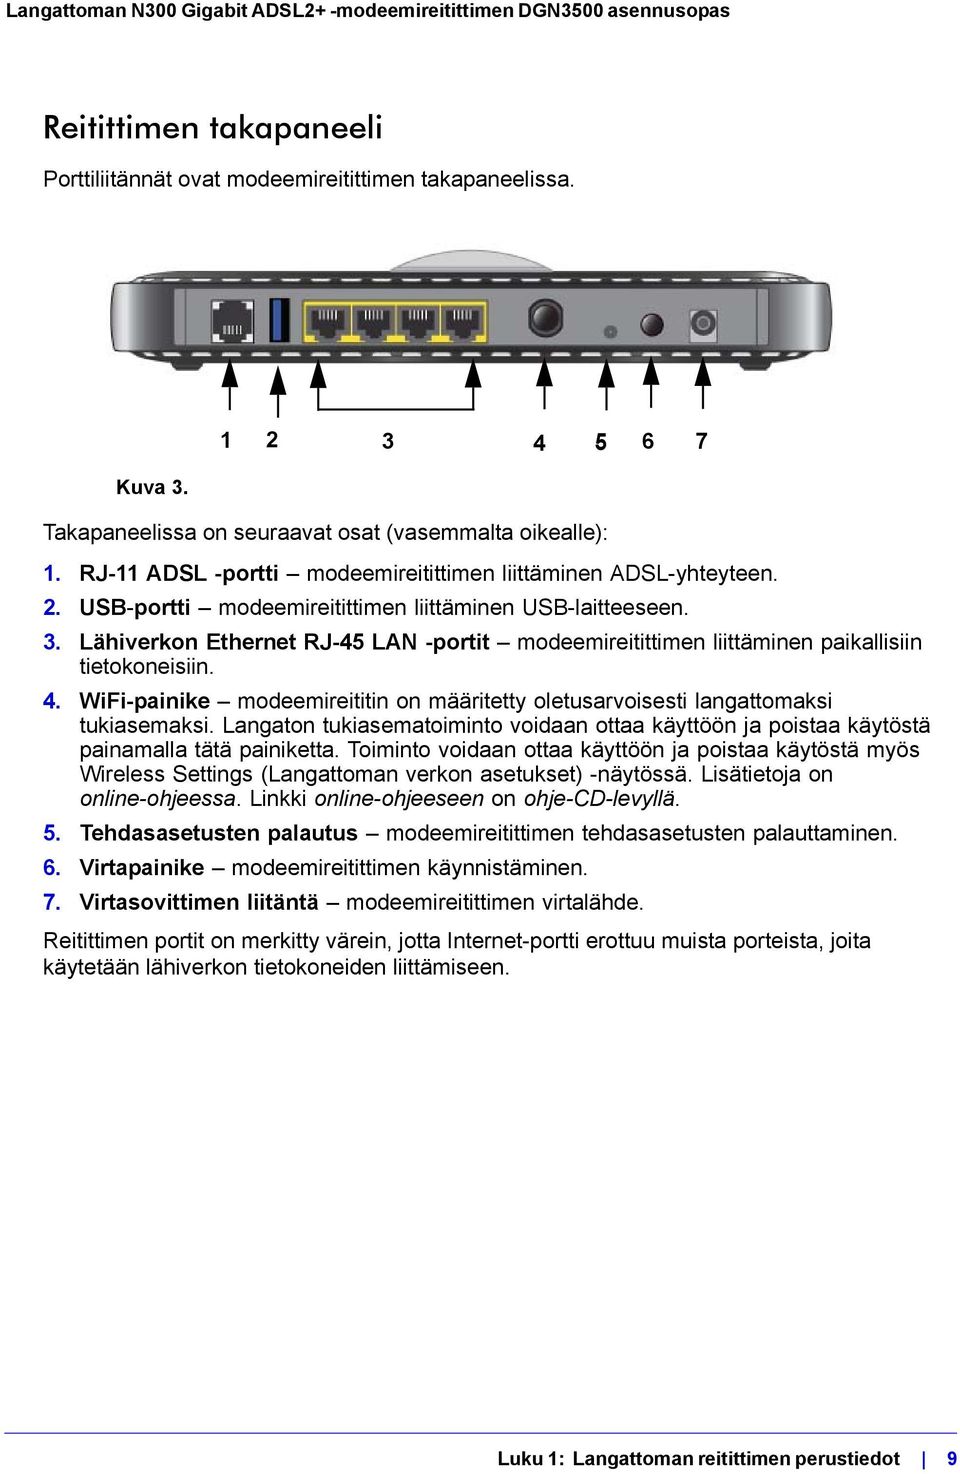 Lähiverkon Ethernet RJ-45 LAN -portit modeemireitittimen liittäminen paikallisiin tietokoneisiin. 4. WiFi-painike modeemireititin on määritetty oletusarvoisesti langattomaksi tukiasemaksi.